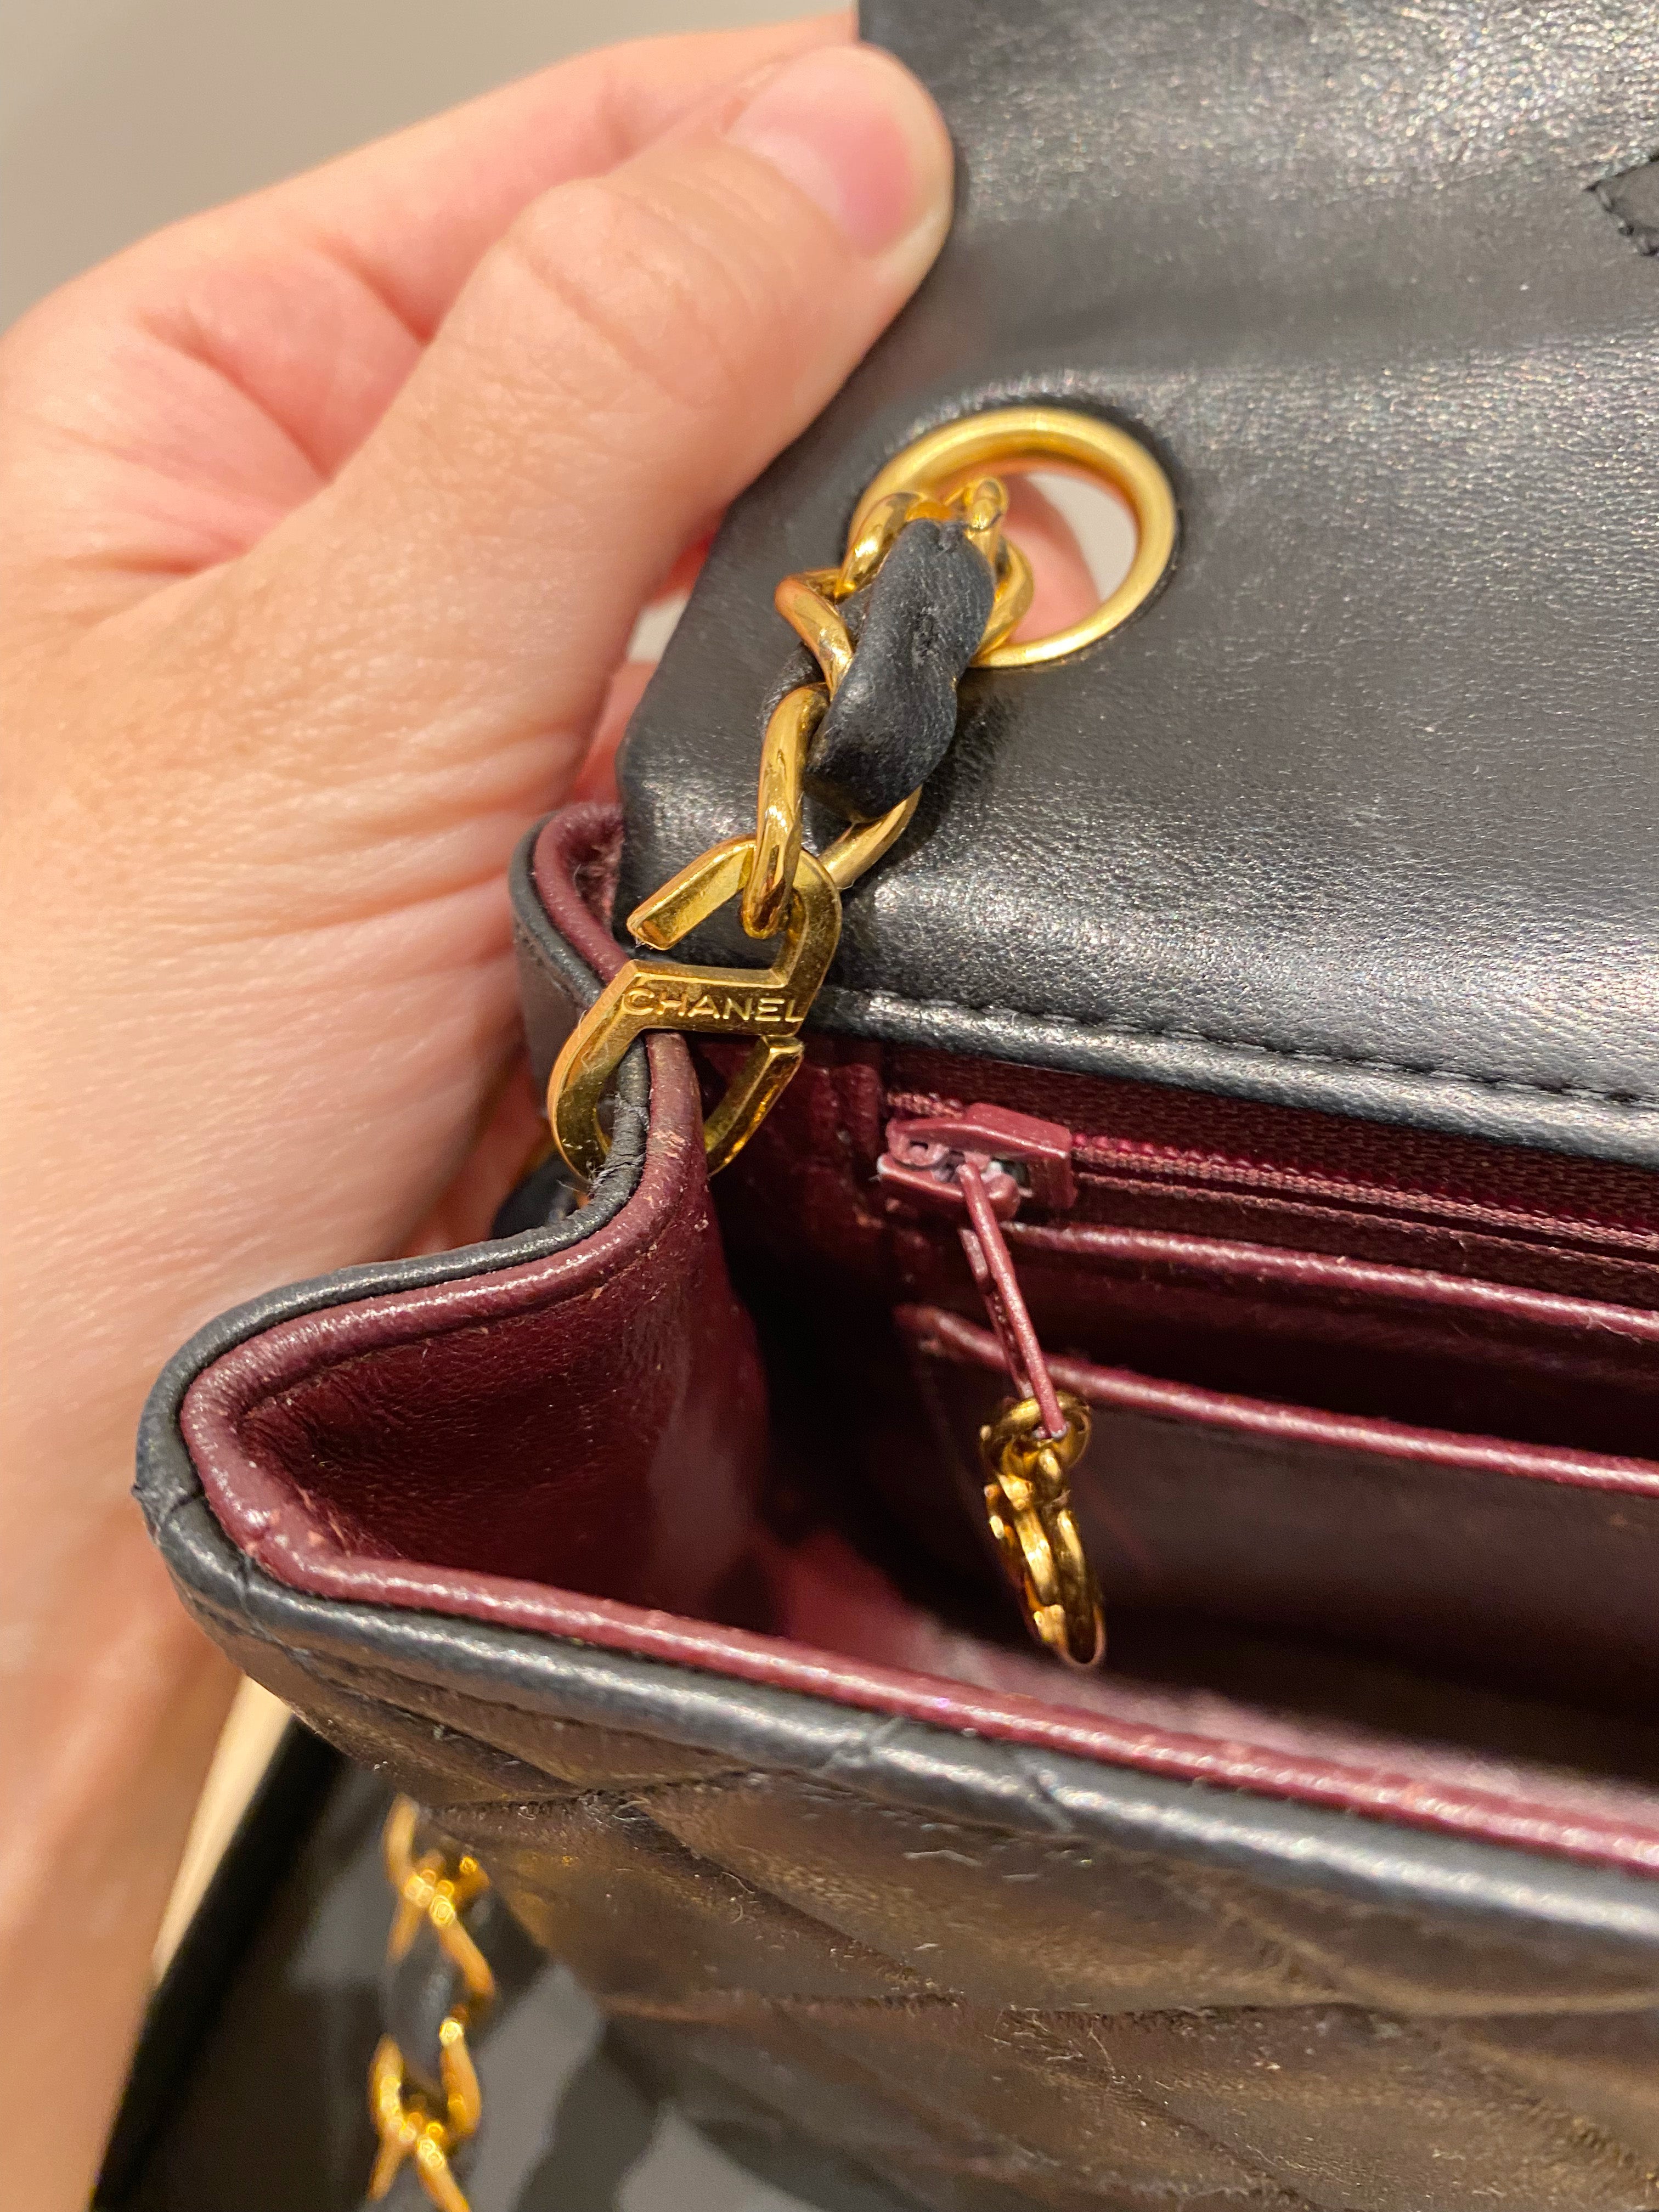 Chanel Mini Flap Bag Vintage - Sort Med Guldhardware